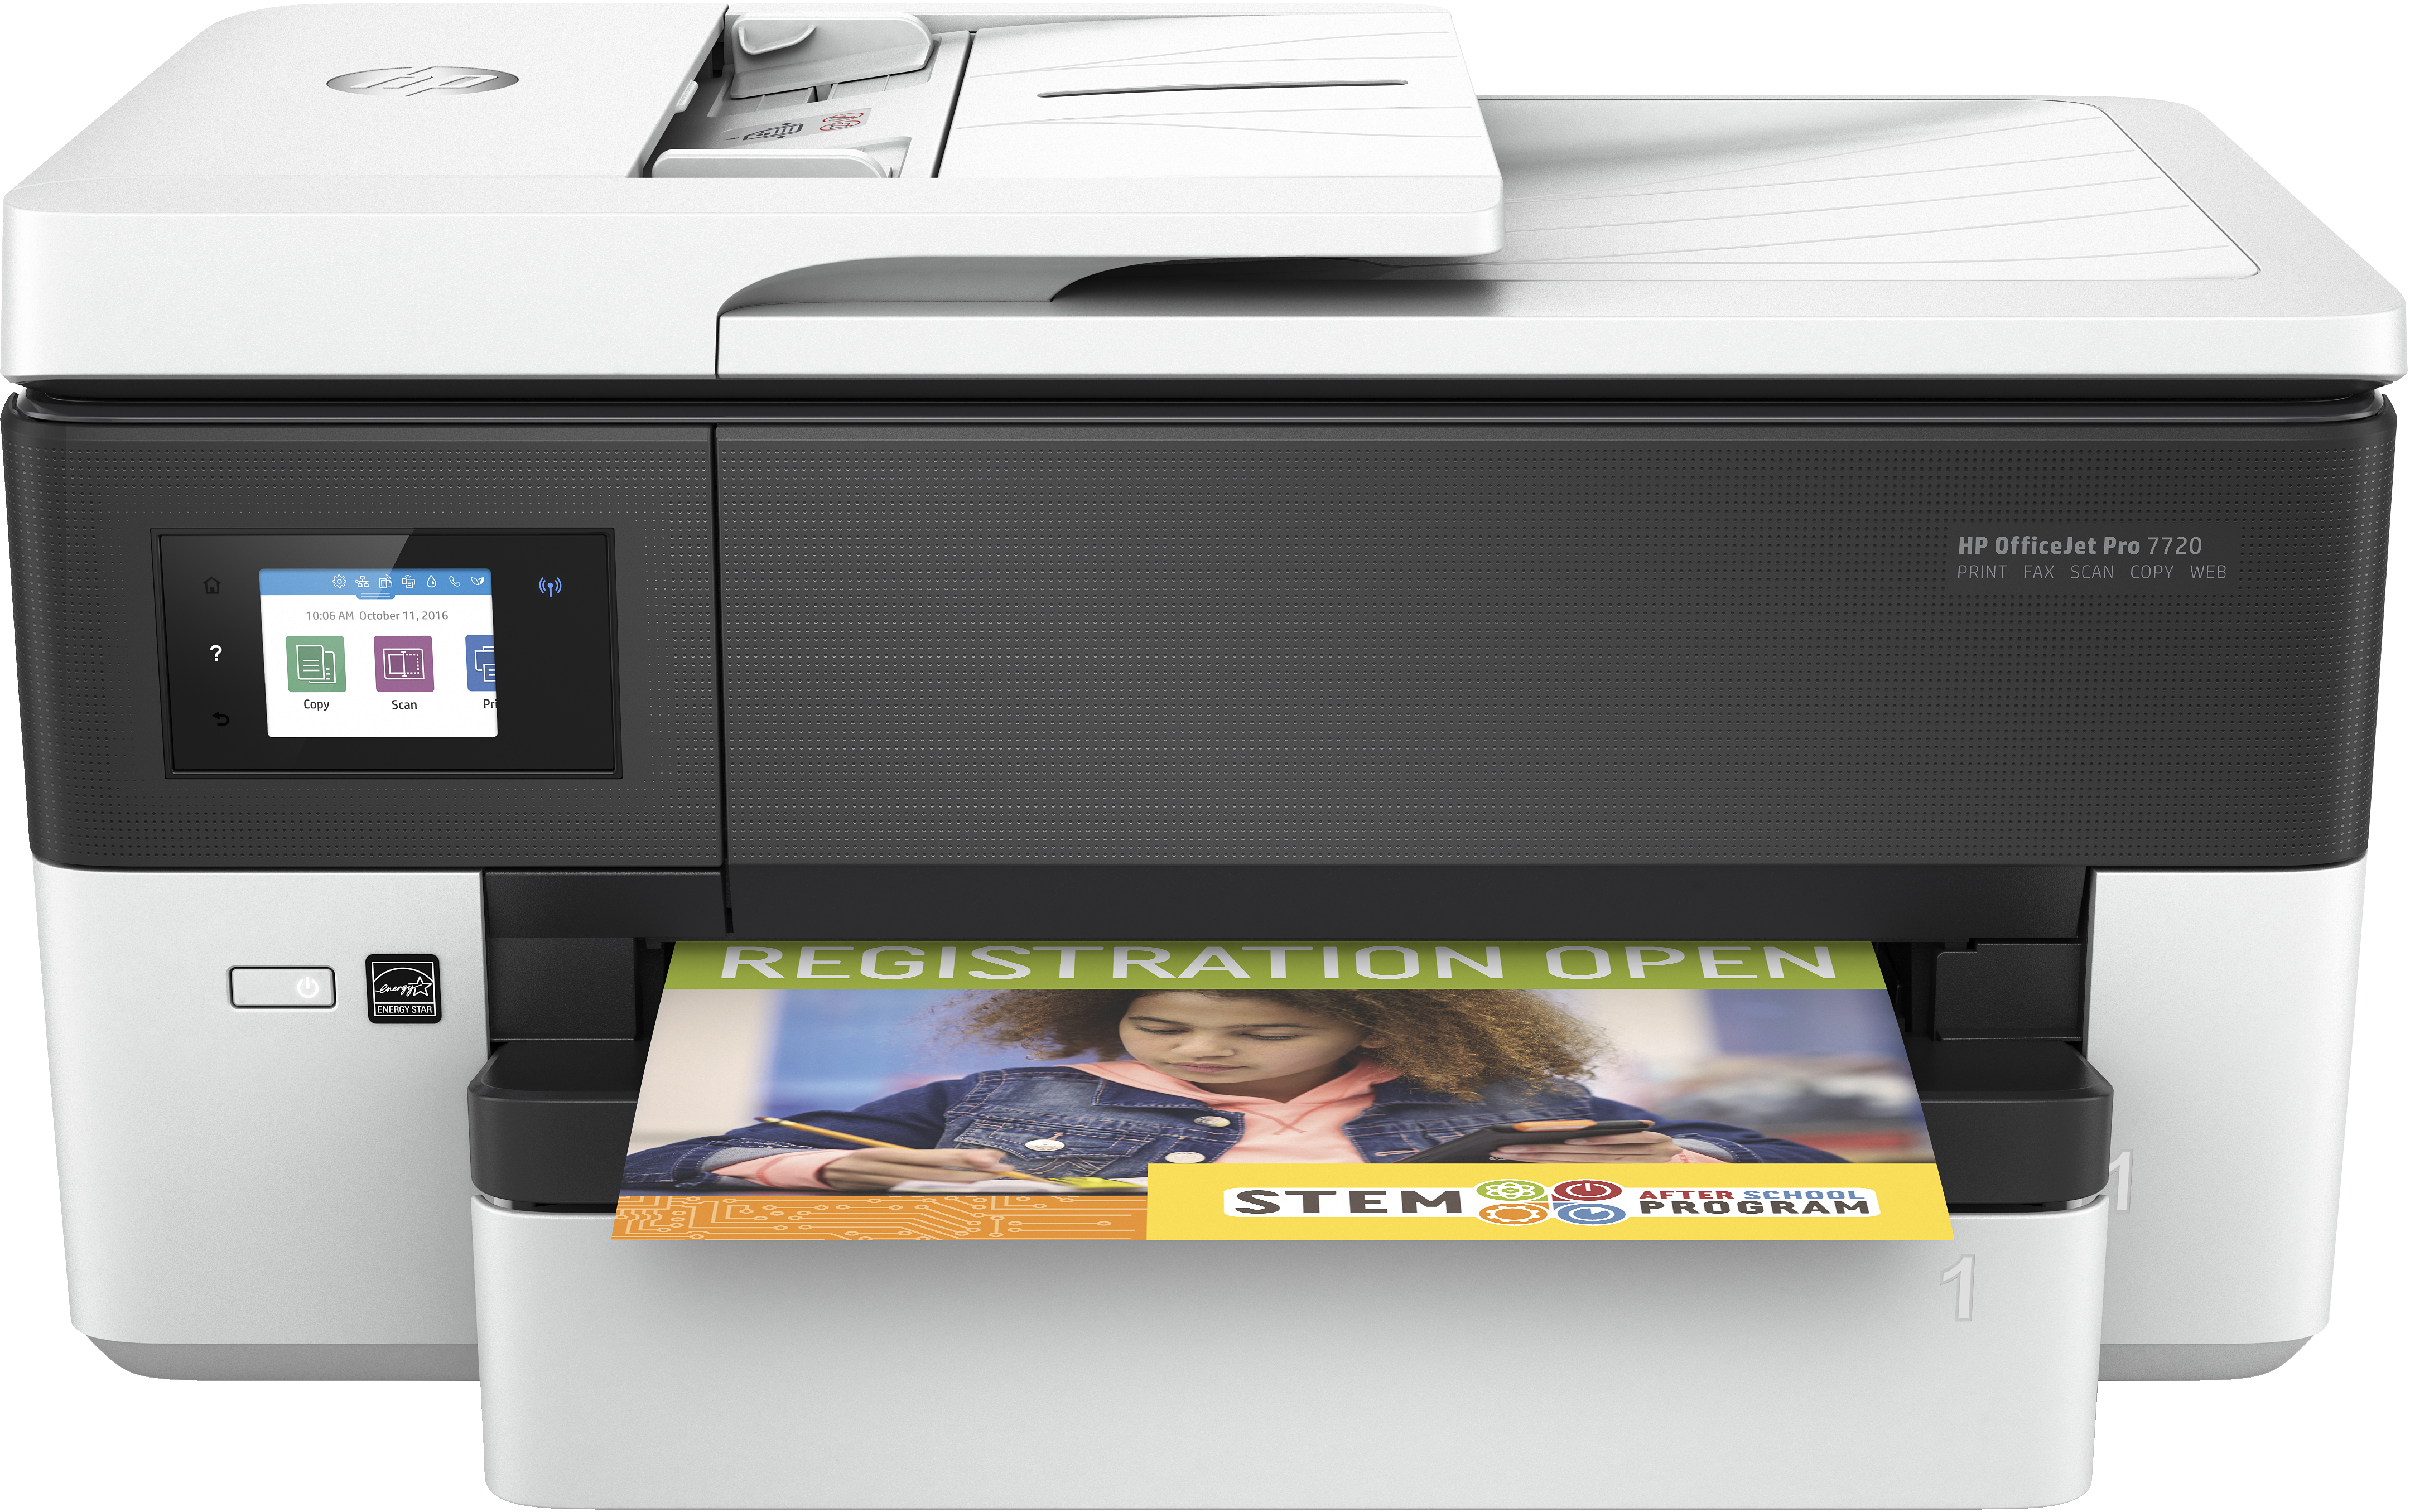 HP HP OfficeJet Pro 7720 breedformaat All-in-One printer, Kleur, Printer voor Kleine kantoren, Printen, kopi&#235;ren, scannen, faxen, Invoer voor 35 vel; Printen via USB-poort aan voorzijde; Dubbelzijdig printen